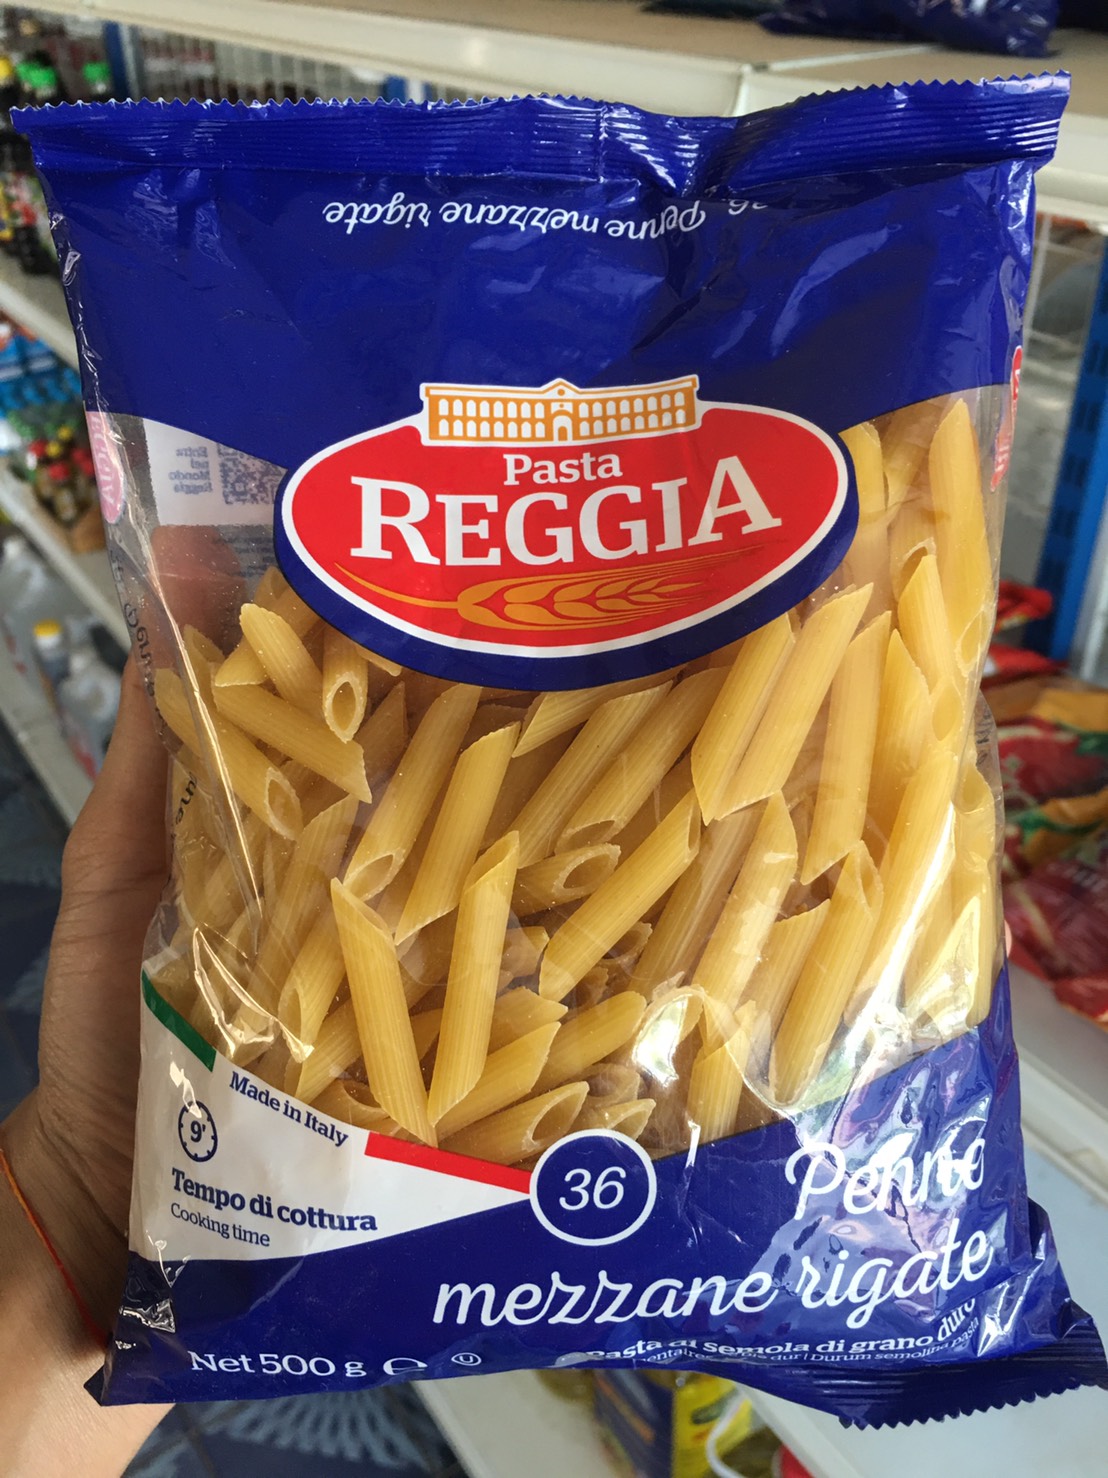 Pasta REGGIA เรจเจีย สปาเกตตี้ เพนเน่ ริกาเต้ เบอร์ 36 500g